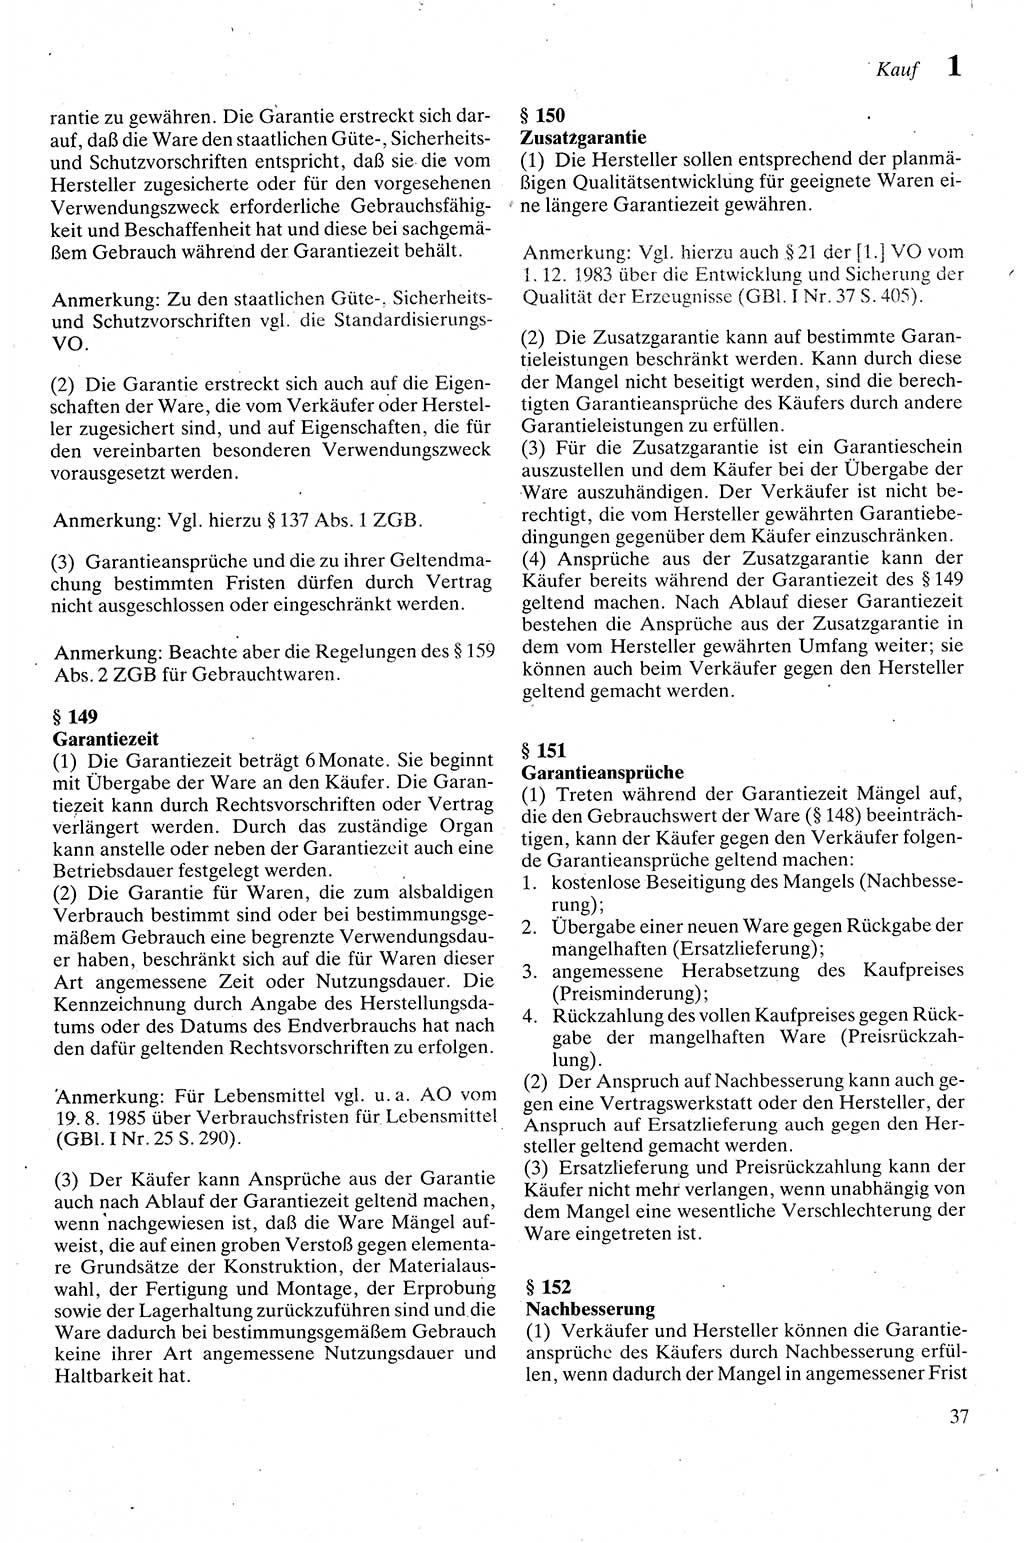 Zivilgesetzbuch (ZVG) sowie angrenzende Gesetze und Bestimmungen [Deutsche Demokratische Republik (DDR)] 1975, Seite 37 (ZGB Ges. Best. DDR 1975, S. 37)